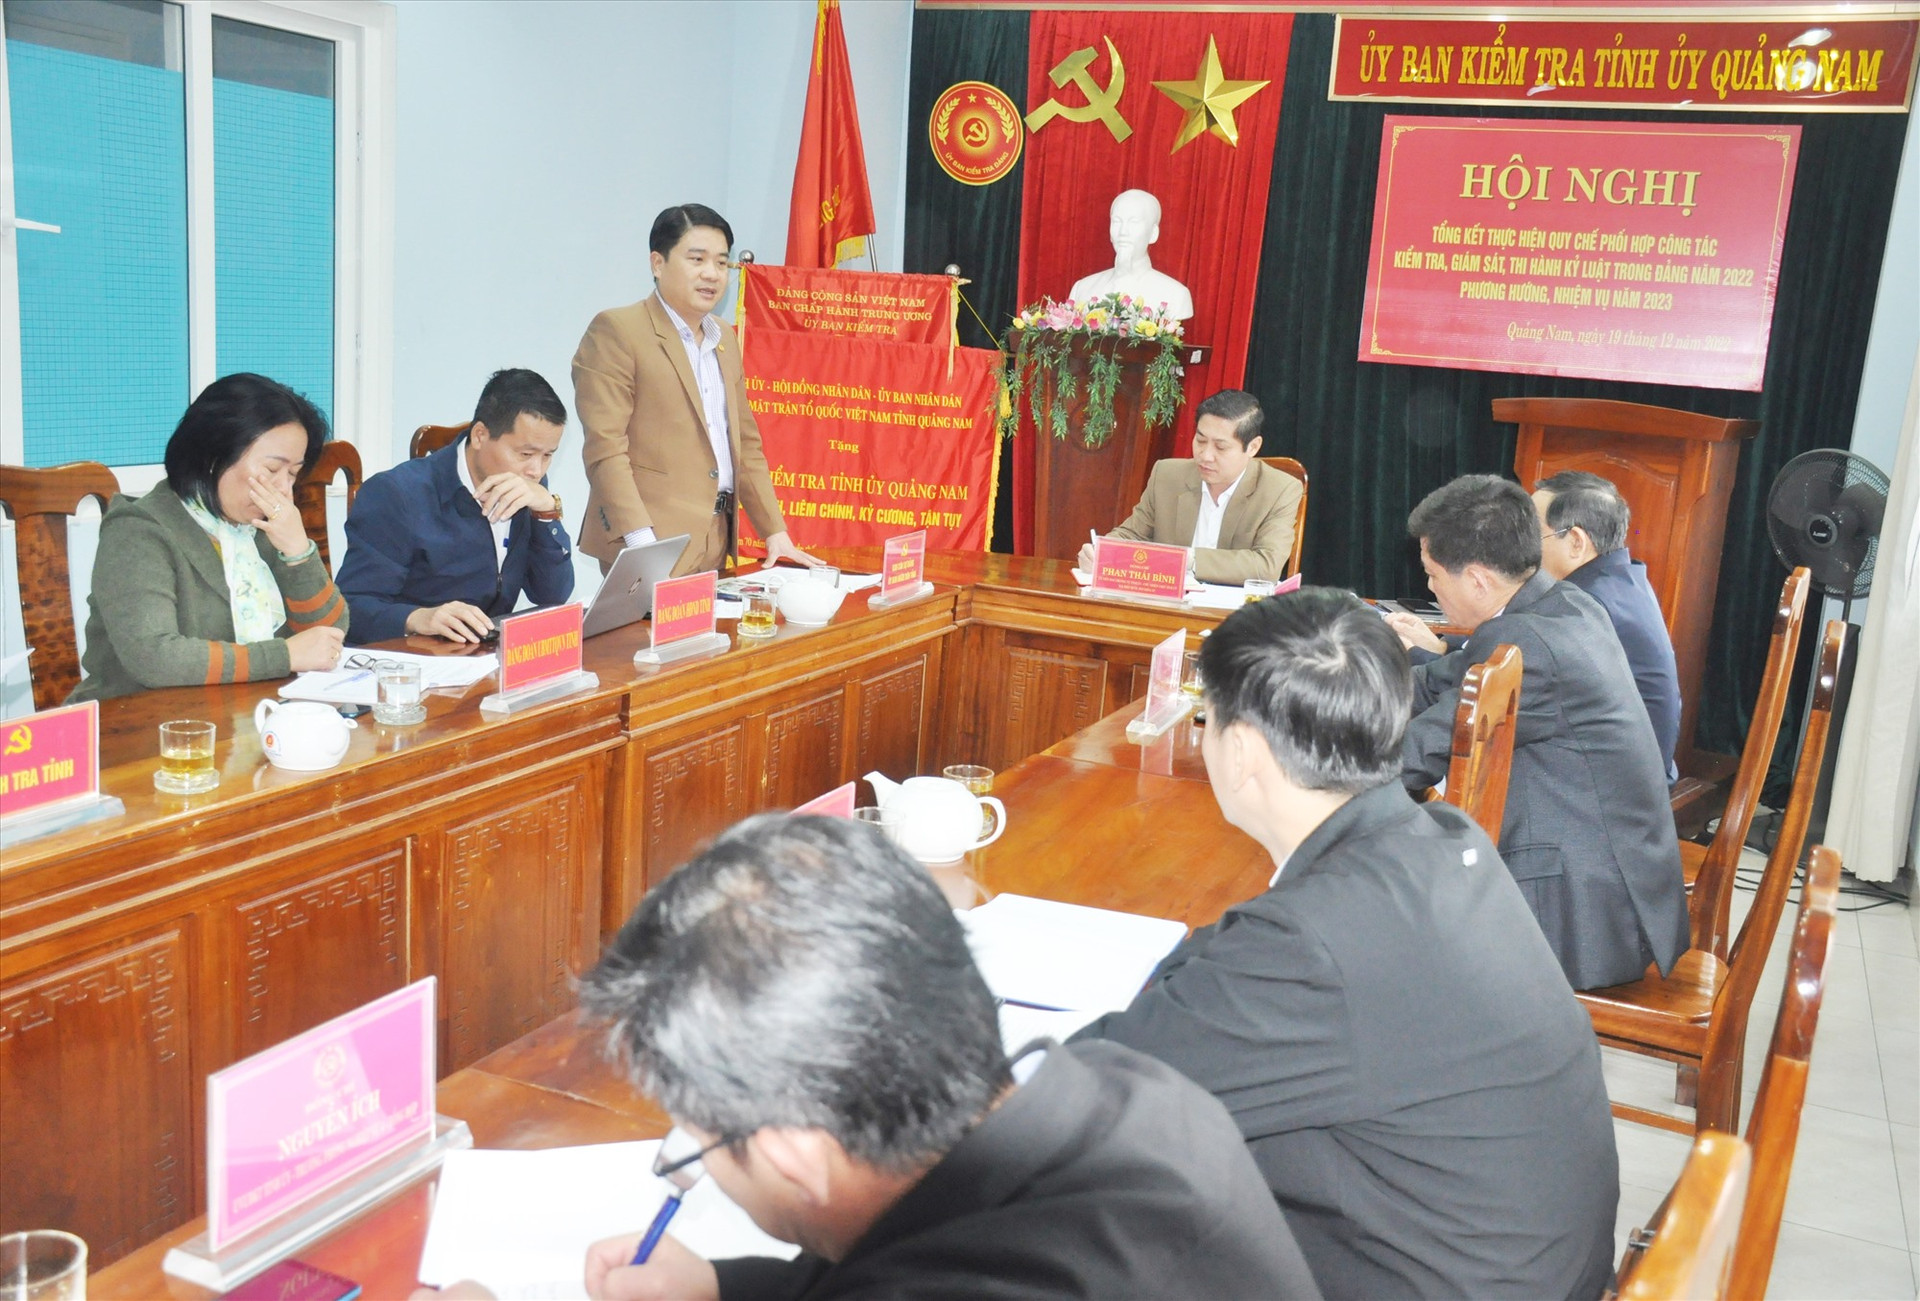 Phó Chủ tịch UBND tỉnh Trần Văn Tân - Phó Bí thư Ban cán sự đảng UBND tỉnh phát biểu thảo luận tại hội nghị. Ảnh: N.Đ